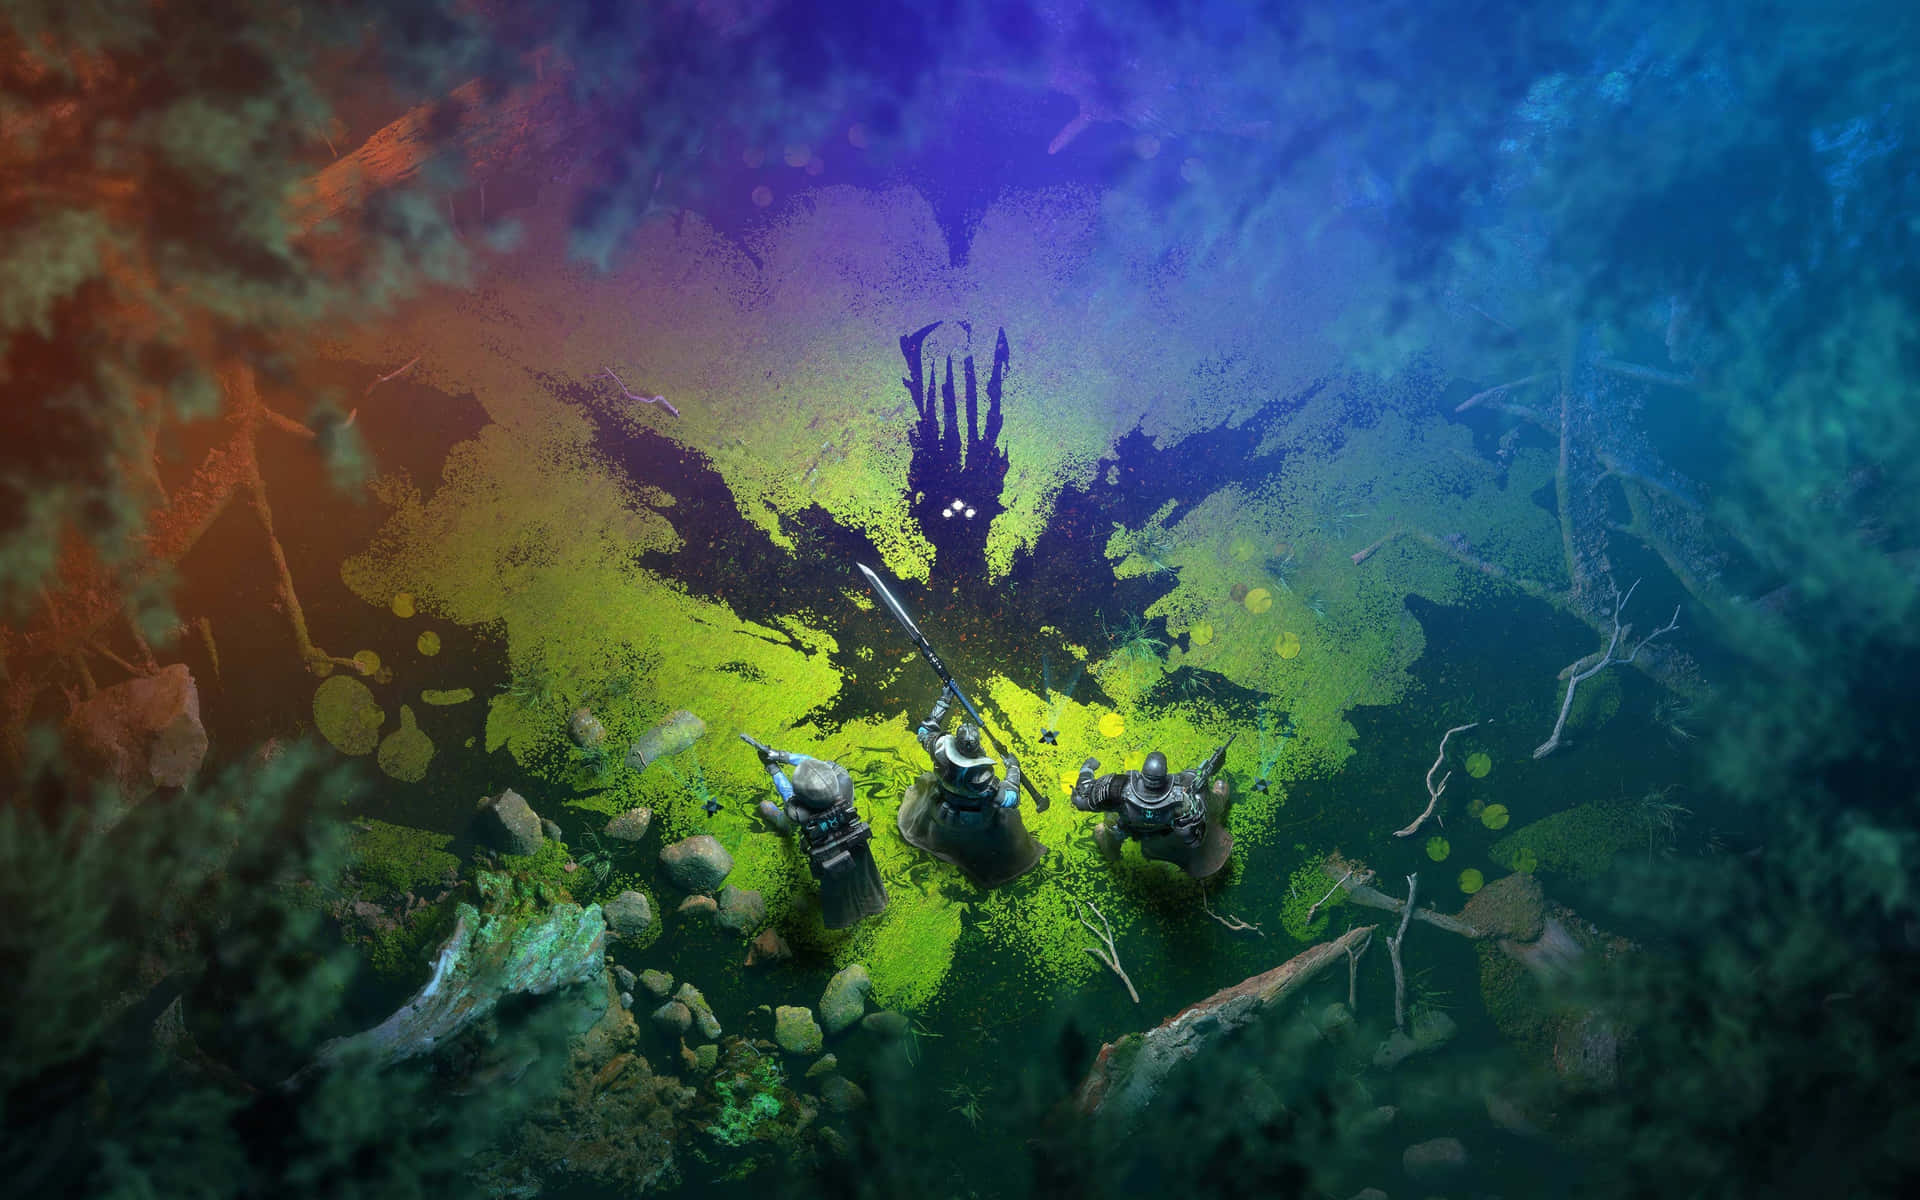 Sejr de kommende slagmarker med Titan i multiplayer skydespillet Destiny 2. Wallpaper